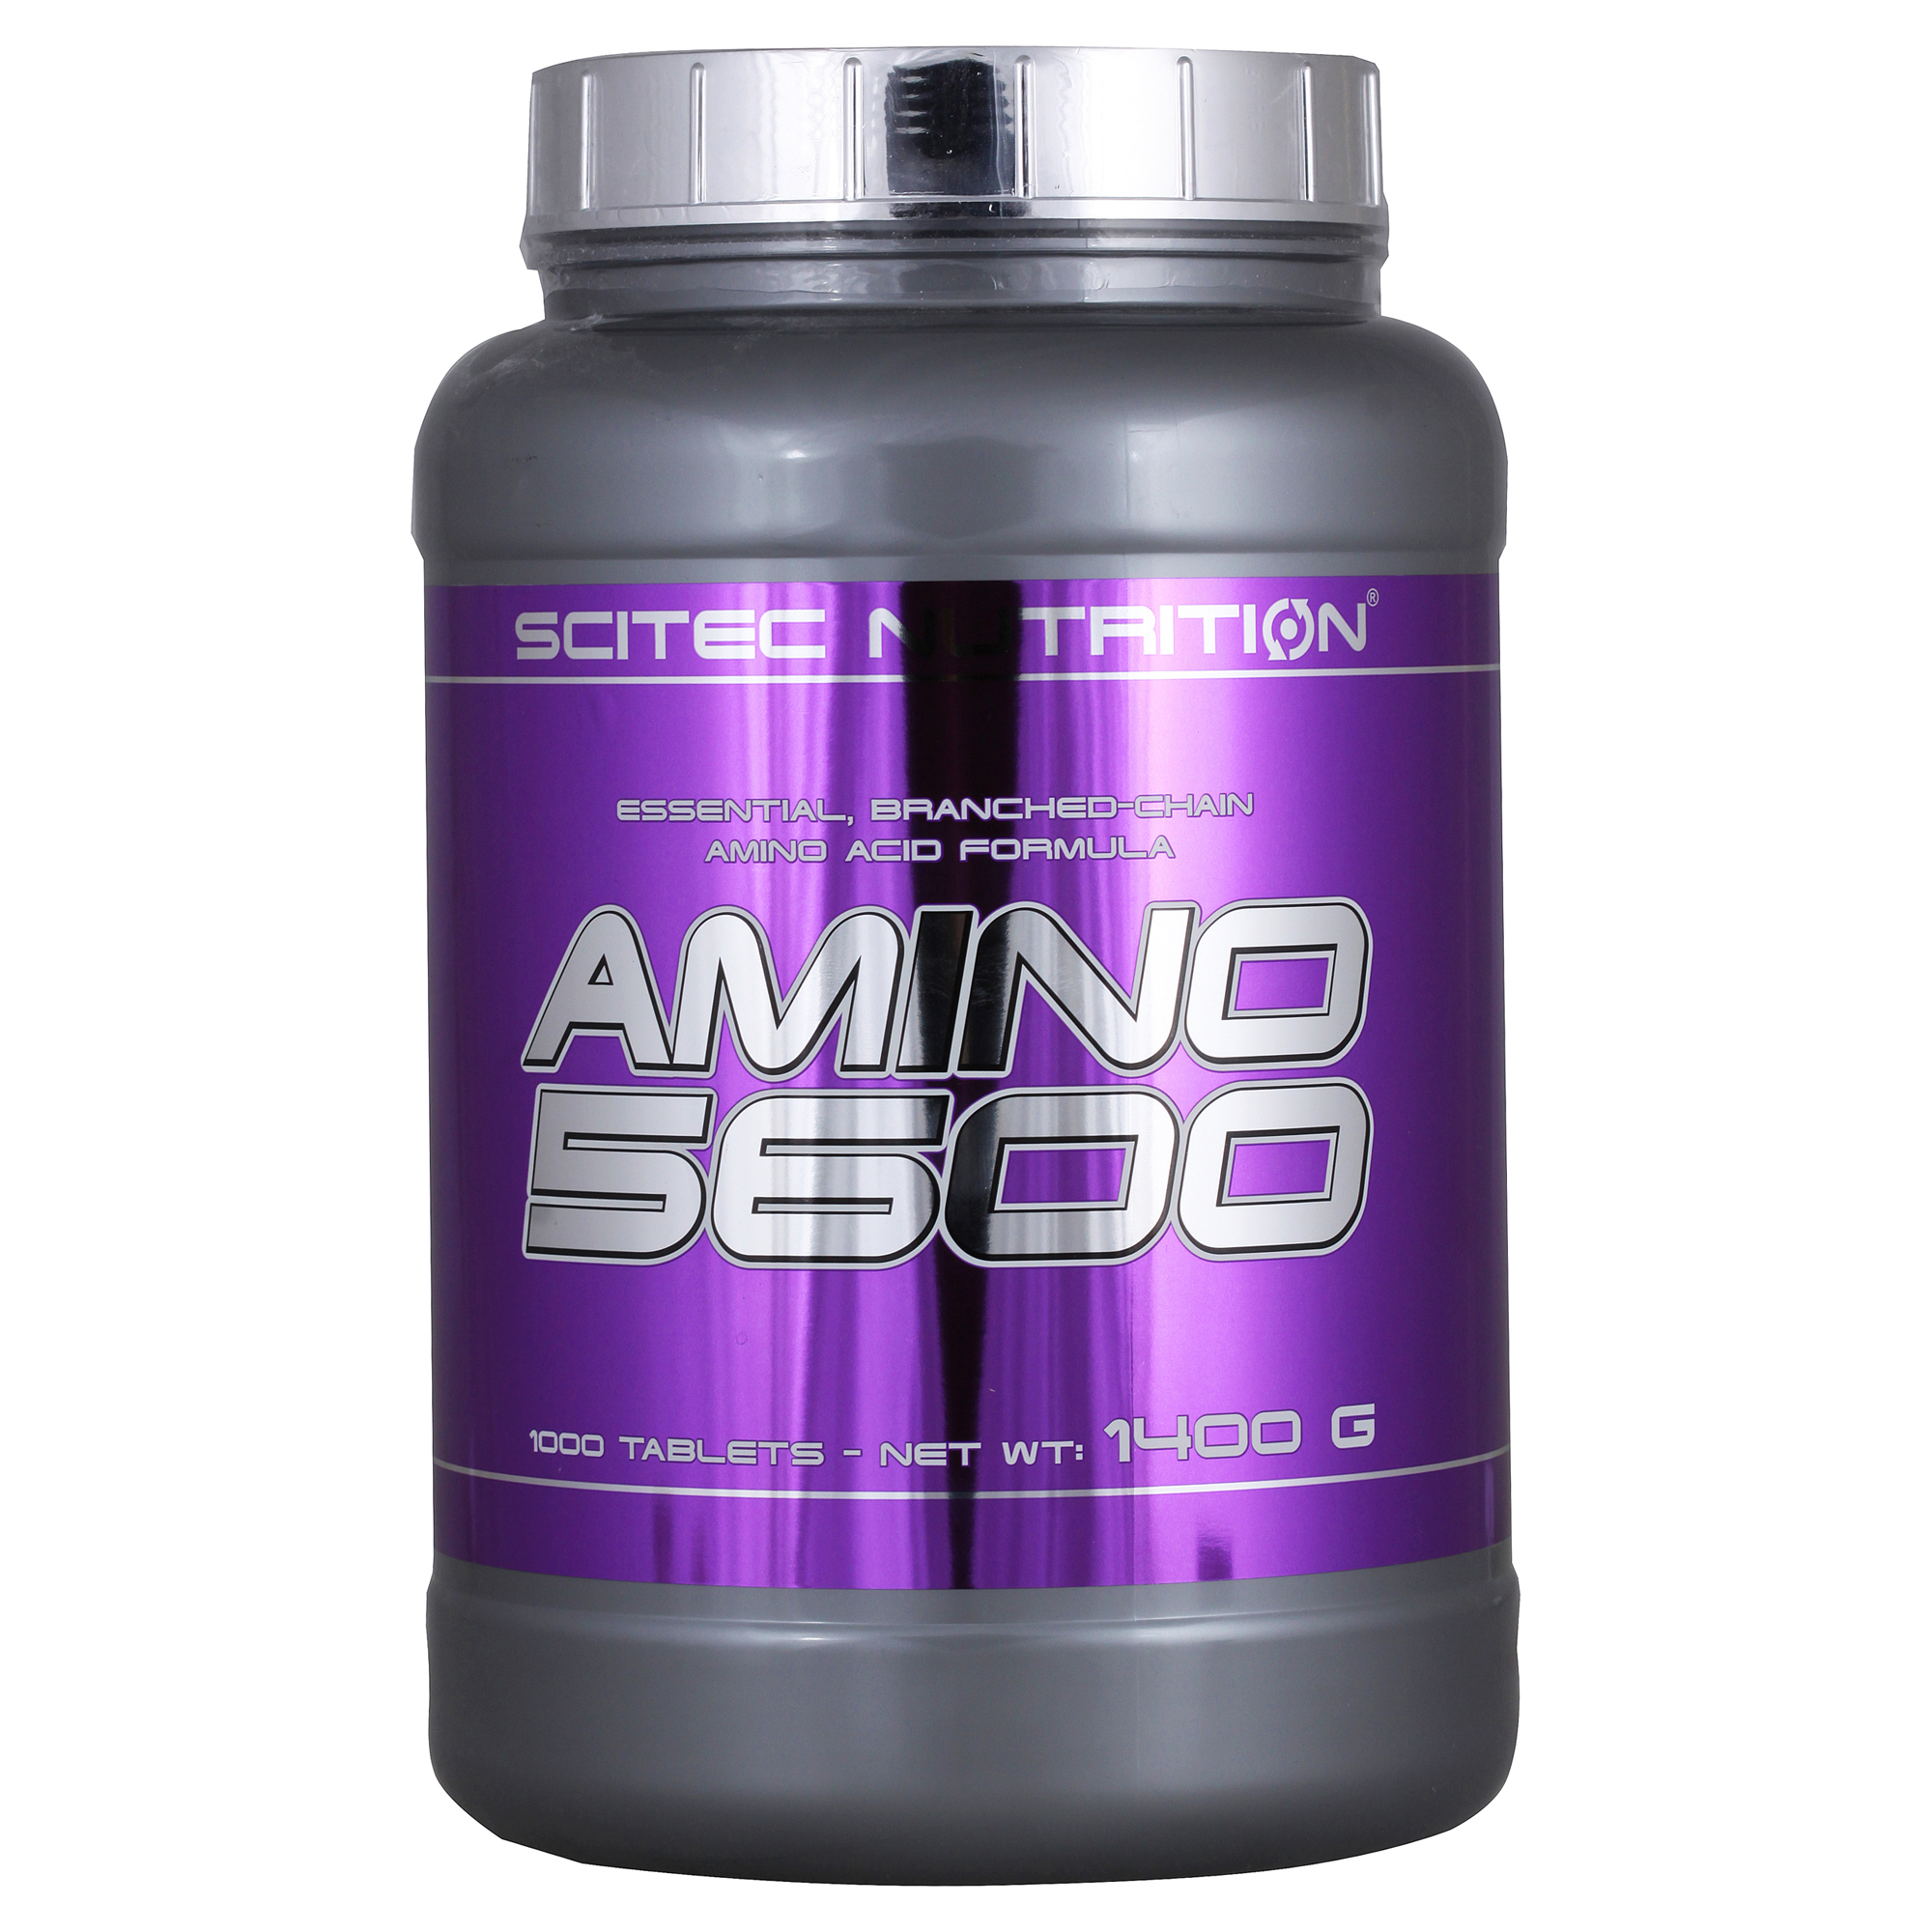 Scitec nutrition amino. Scitec Nutrition Amino 5600. Scitec Nutrition Amino 5600 500 таб. Амино 5600 Scitec Nutrition. Amino 5600 Scitec Nutrition 200 таб.